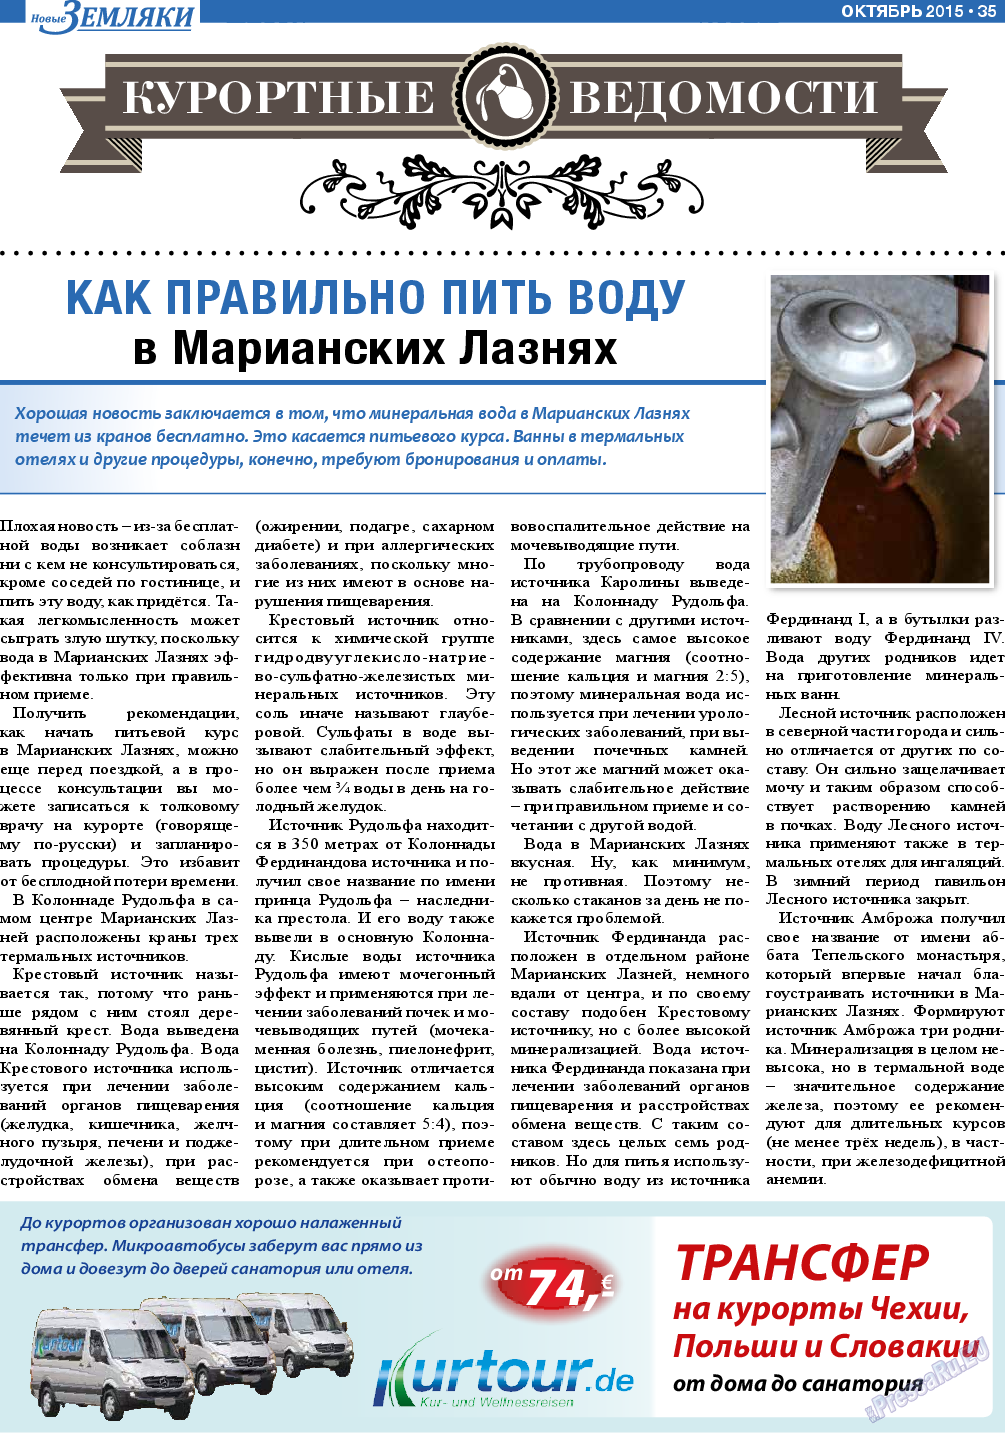 Новые Земляки, газета. 2015 №10 стр.35